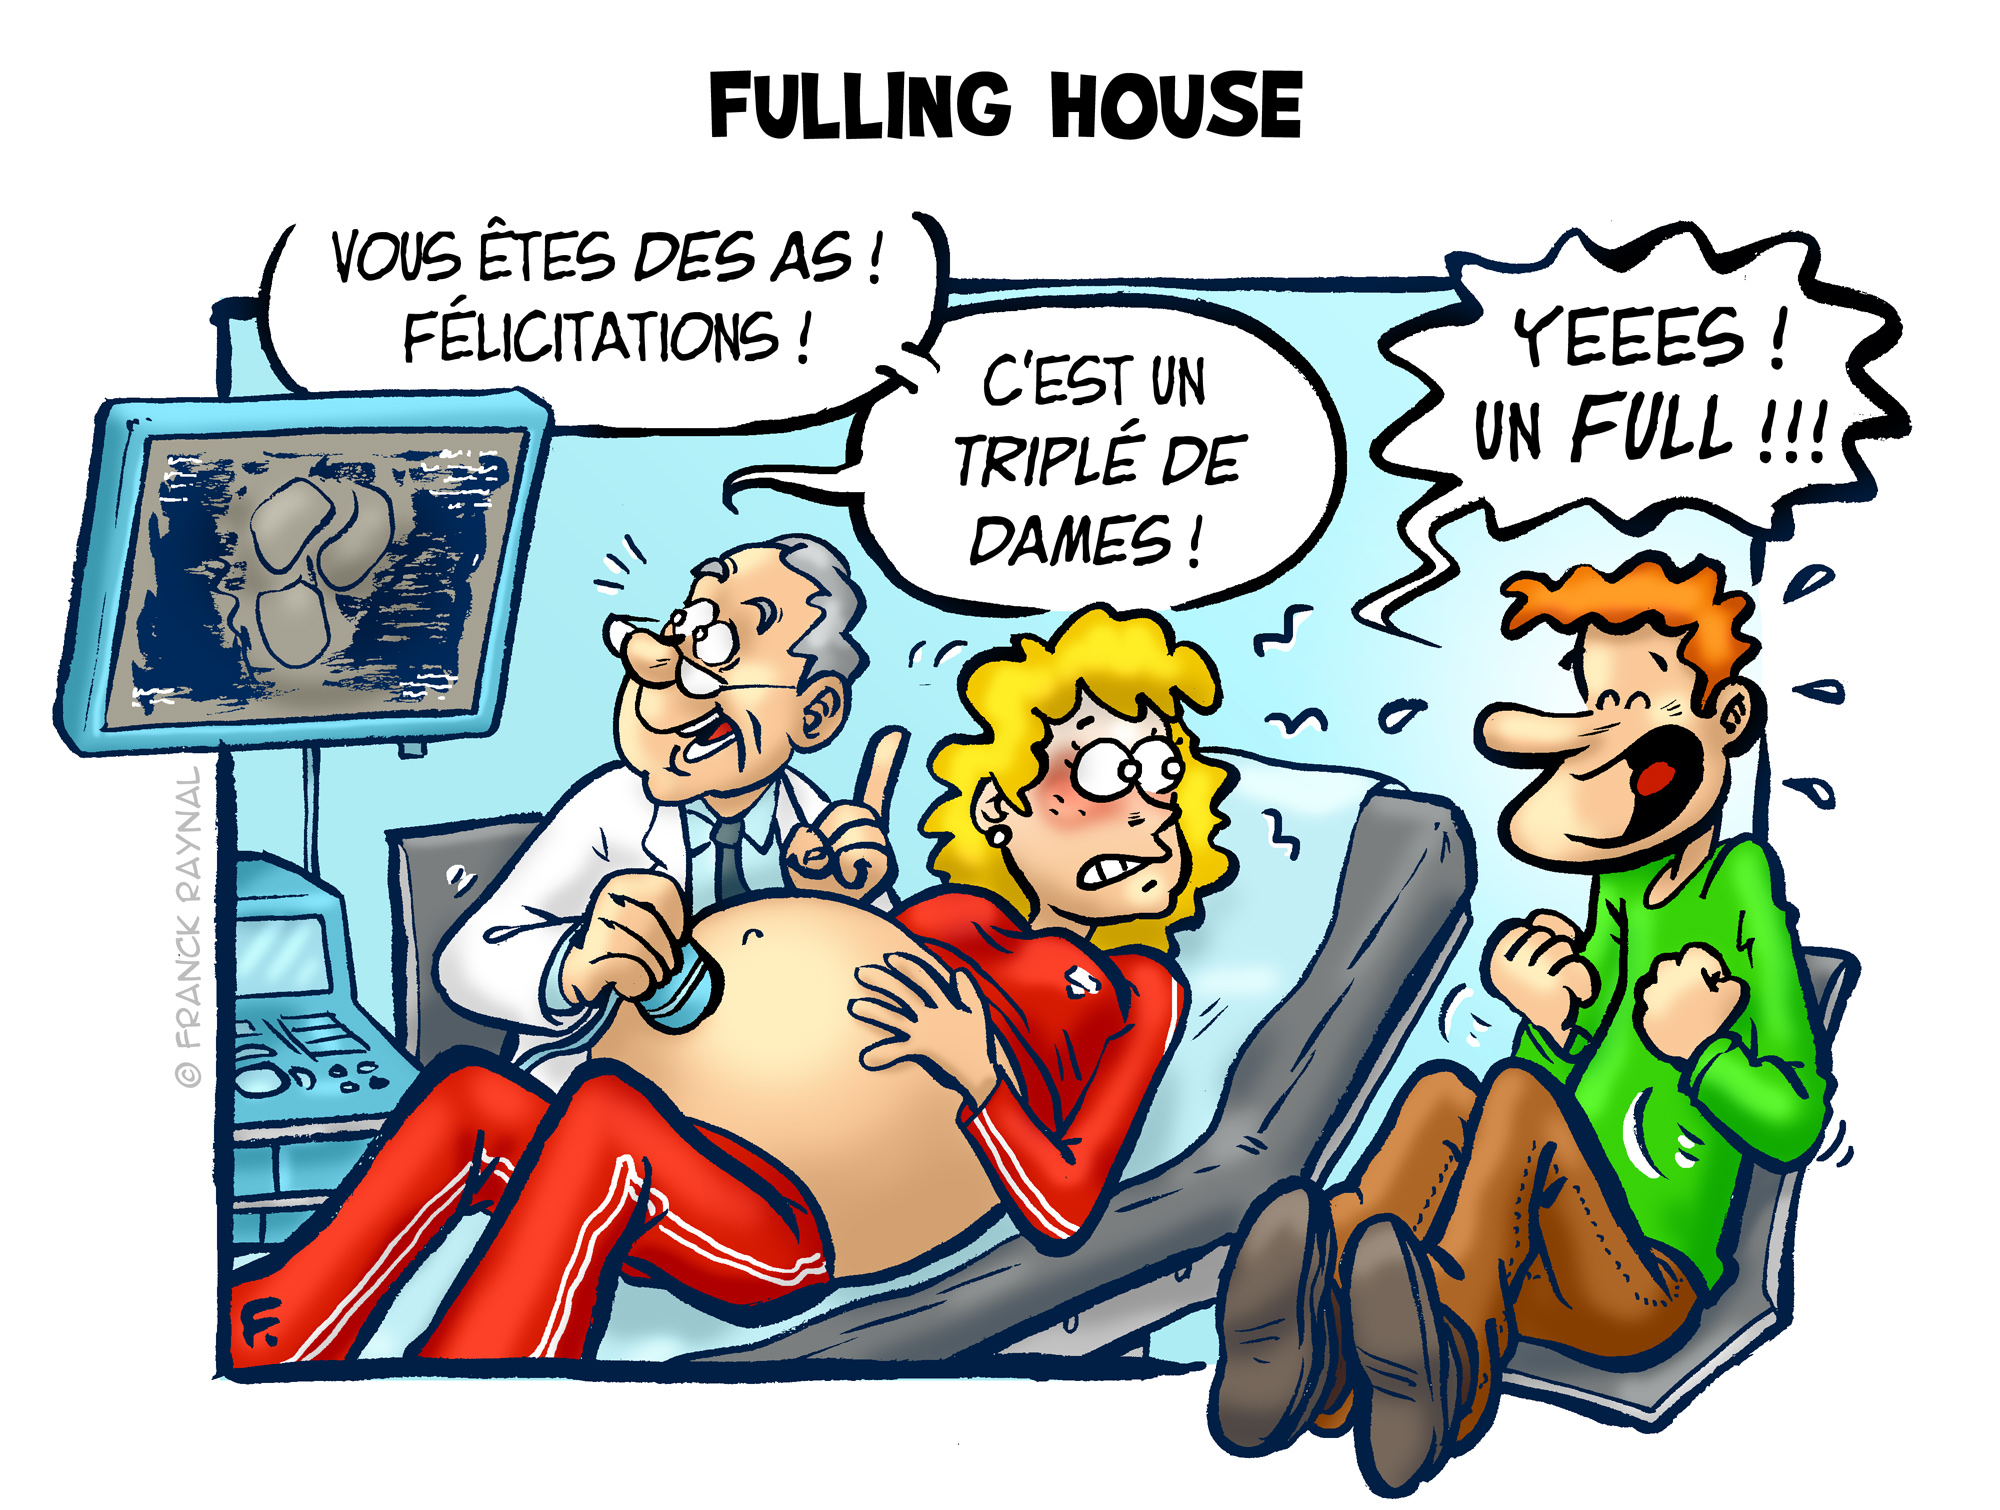 Fulling house